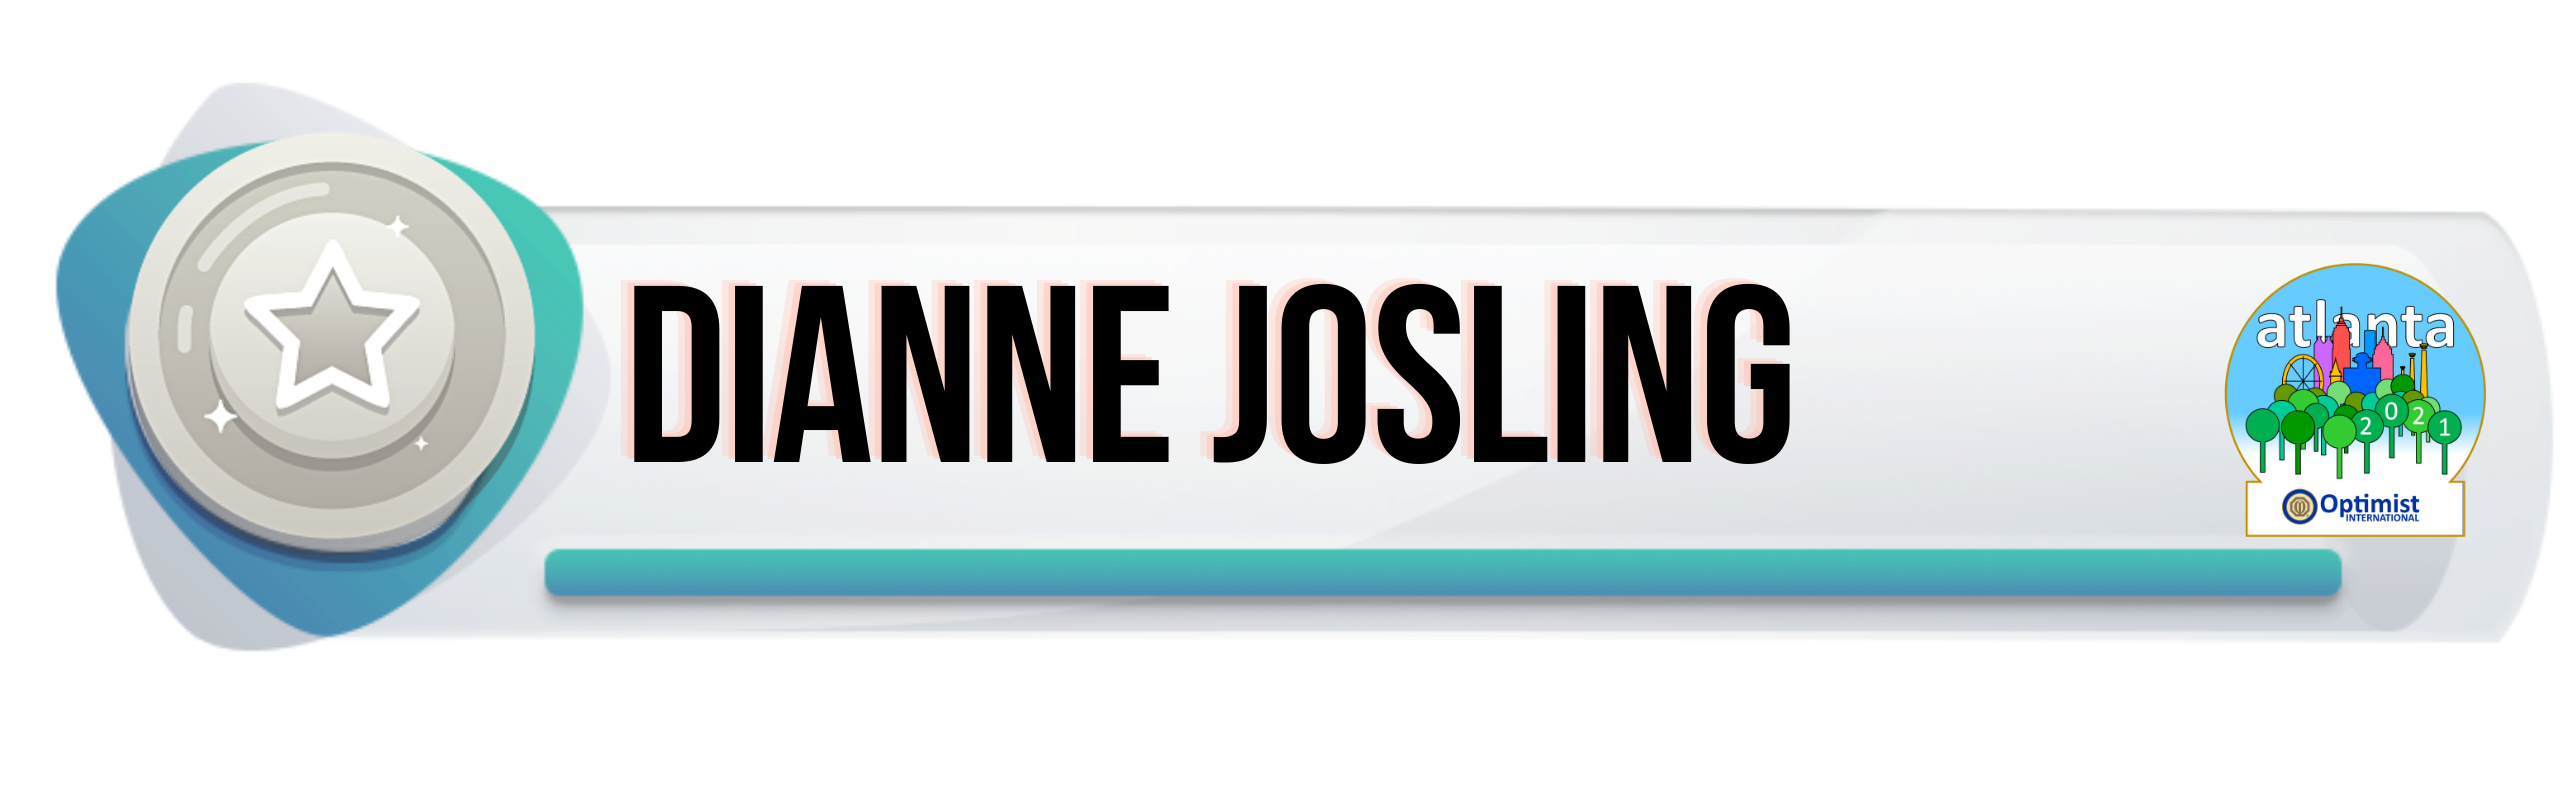 Dianne Josling